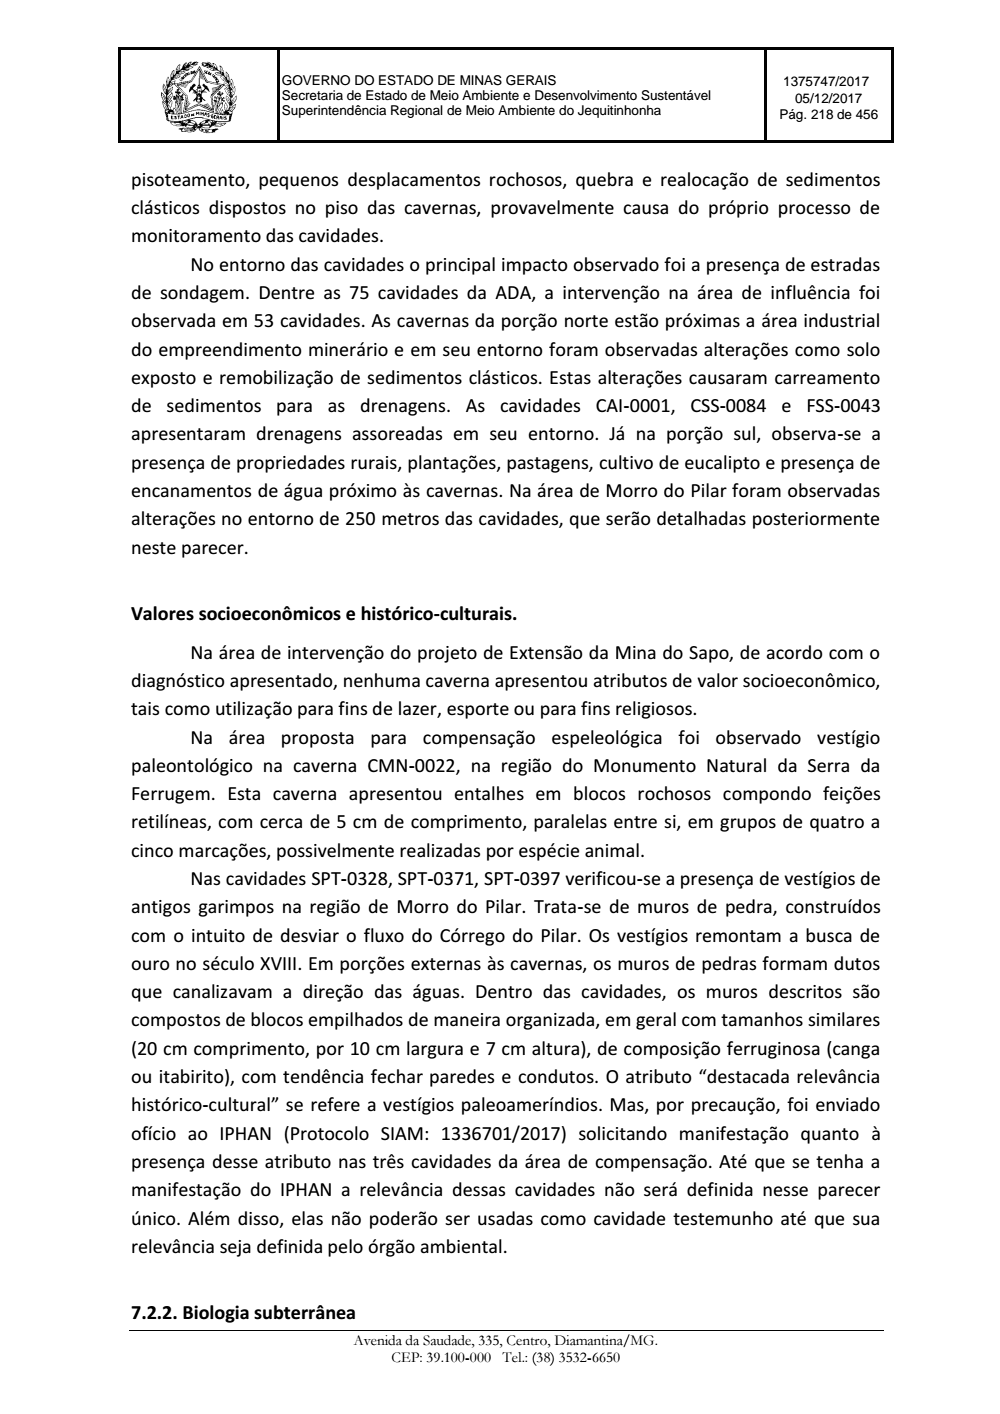 Page 218 from Parecer único da Secretaria de estado de Meio Ambiente e Desenvolvimento Sustentável (SEMAD)